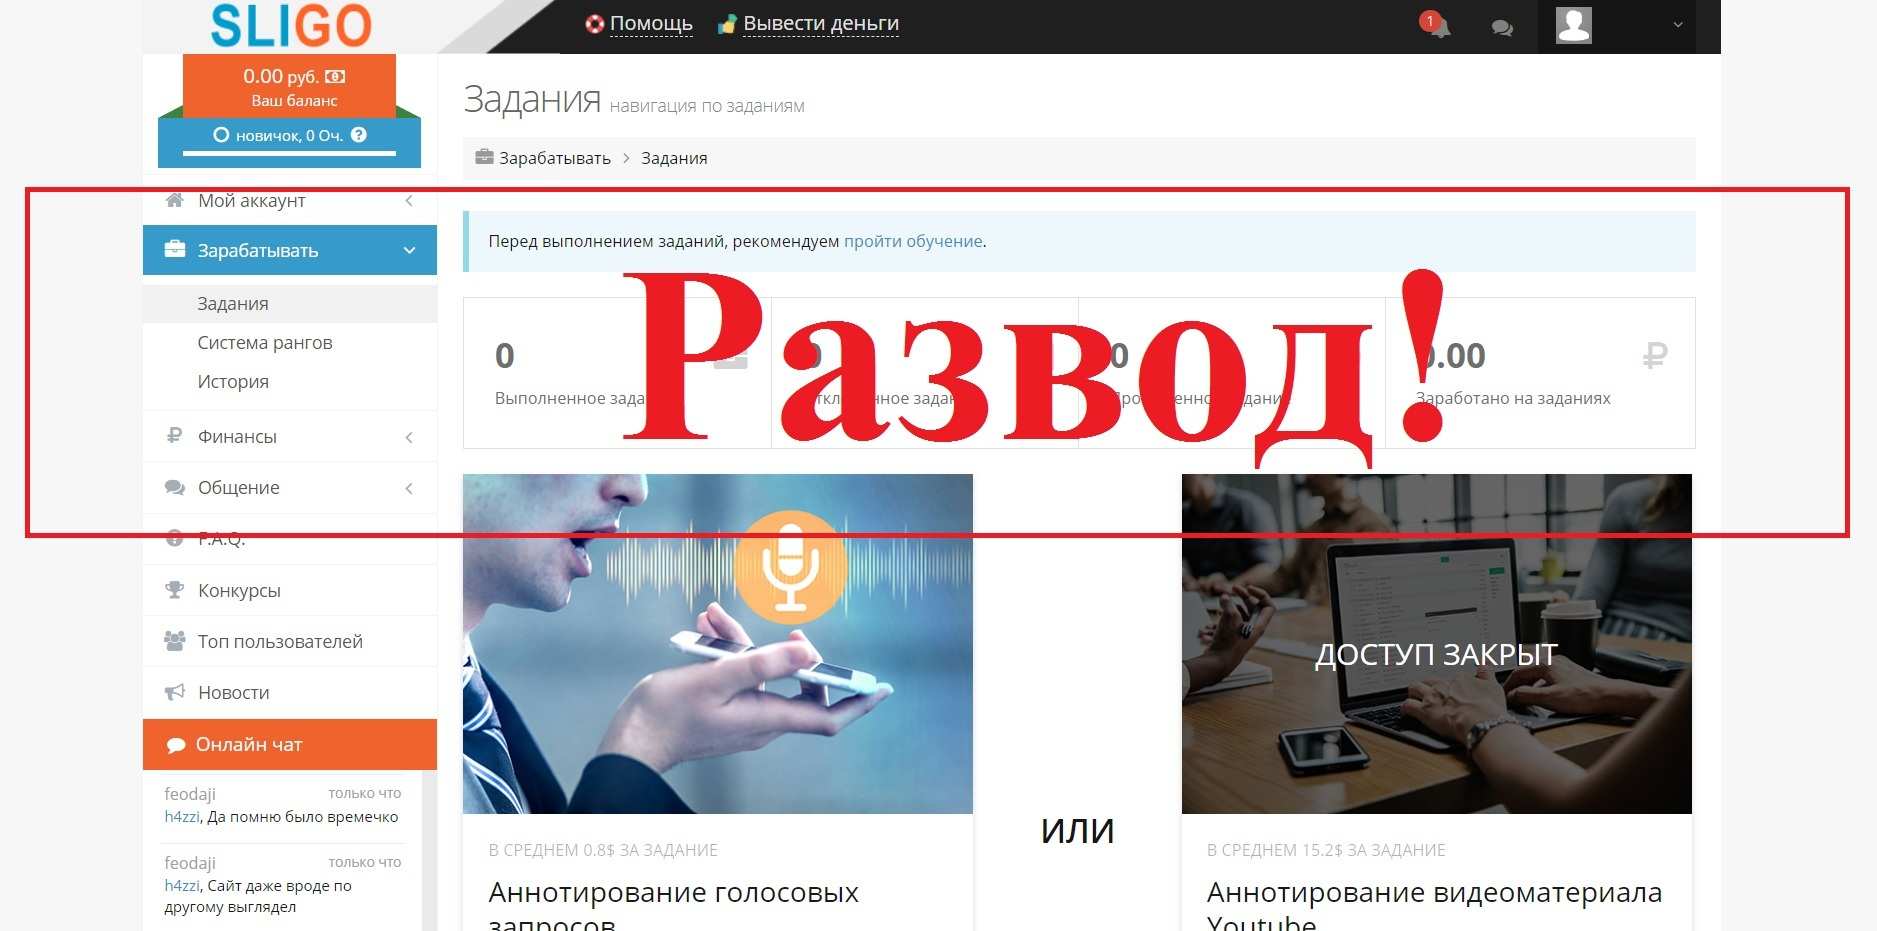 Sligo.ru – отзывы и обзор